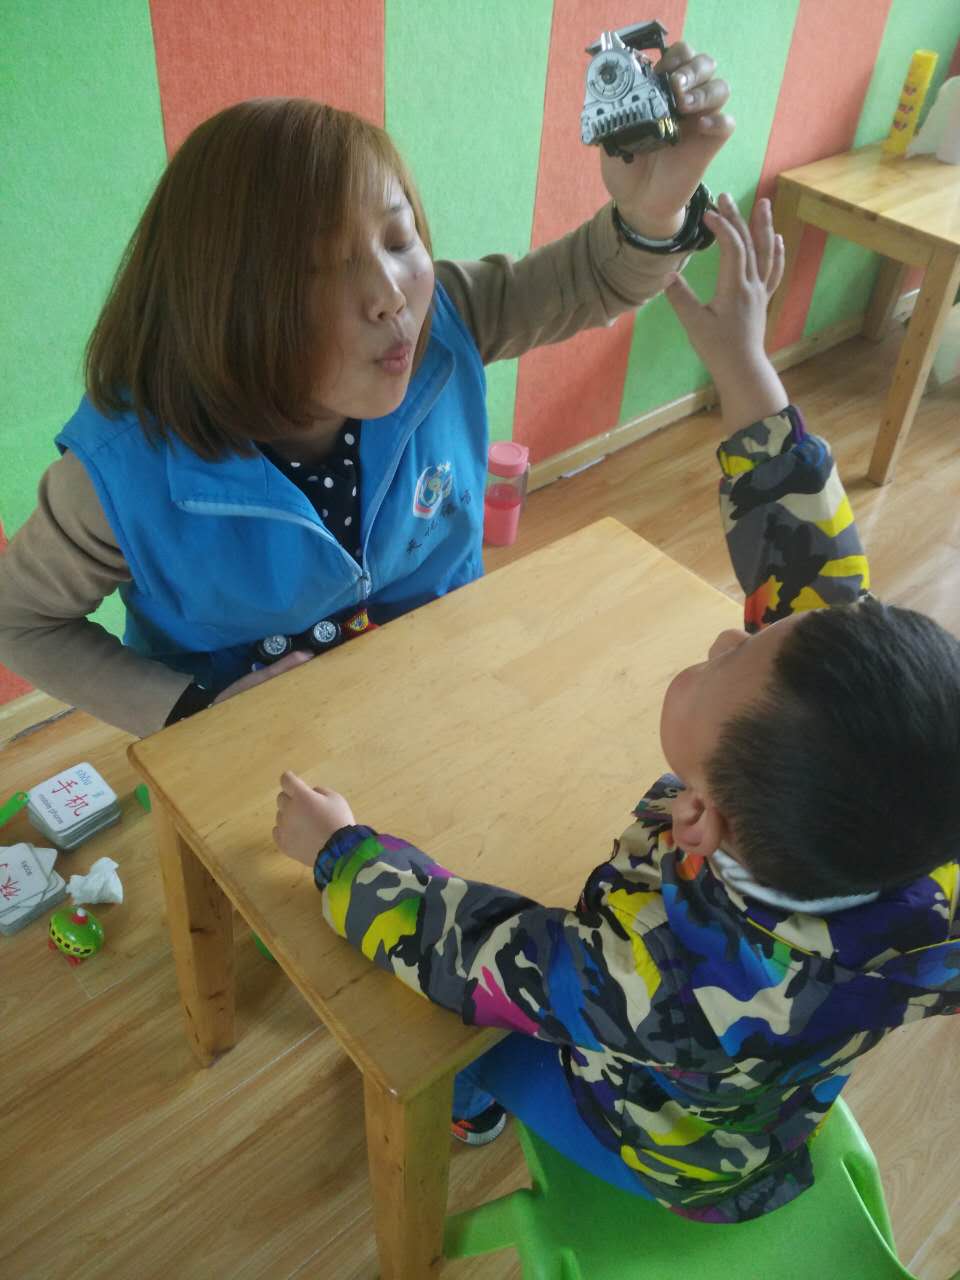 陕西省西安市莲湖区畅悦语言儿童发展中心